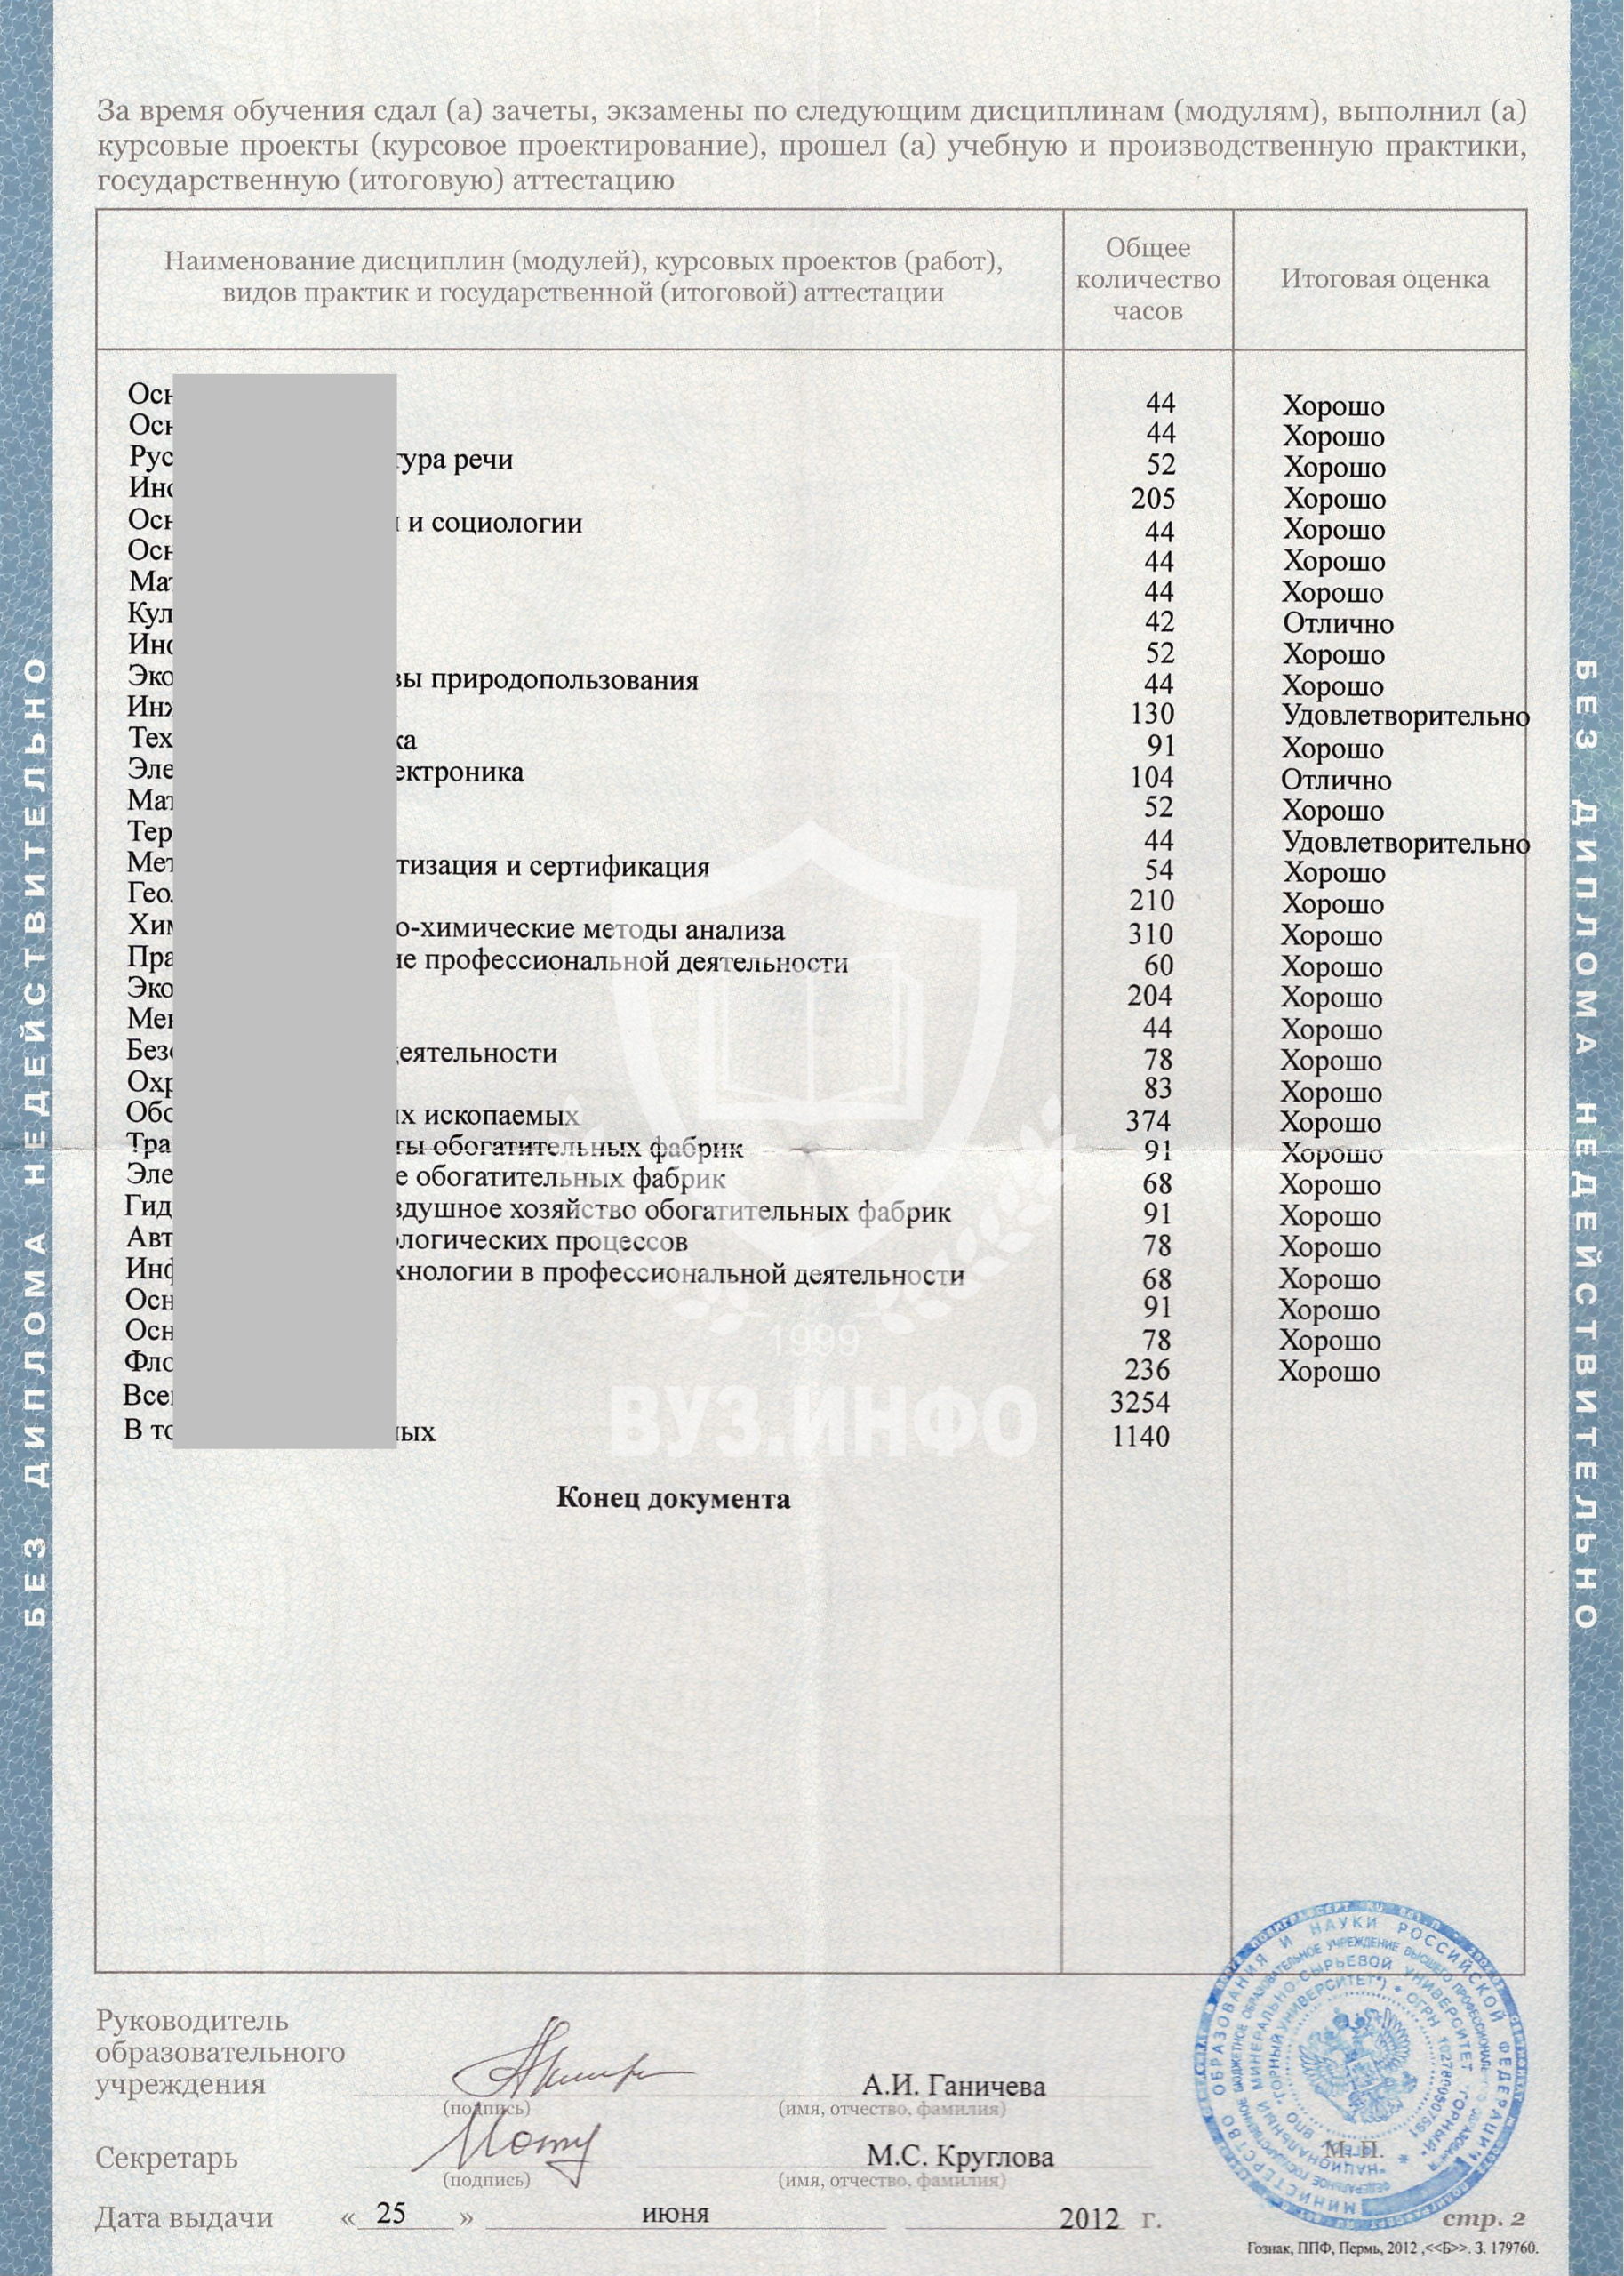 Предметы в приложении диплома Хибинского горного колледжа Полезные ископаемые 2012 года (бланк Гознак Пермь)